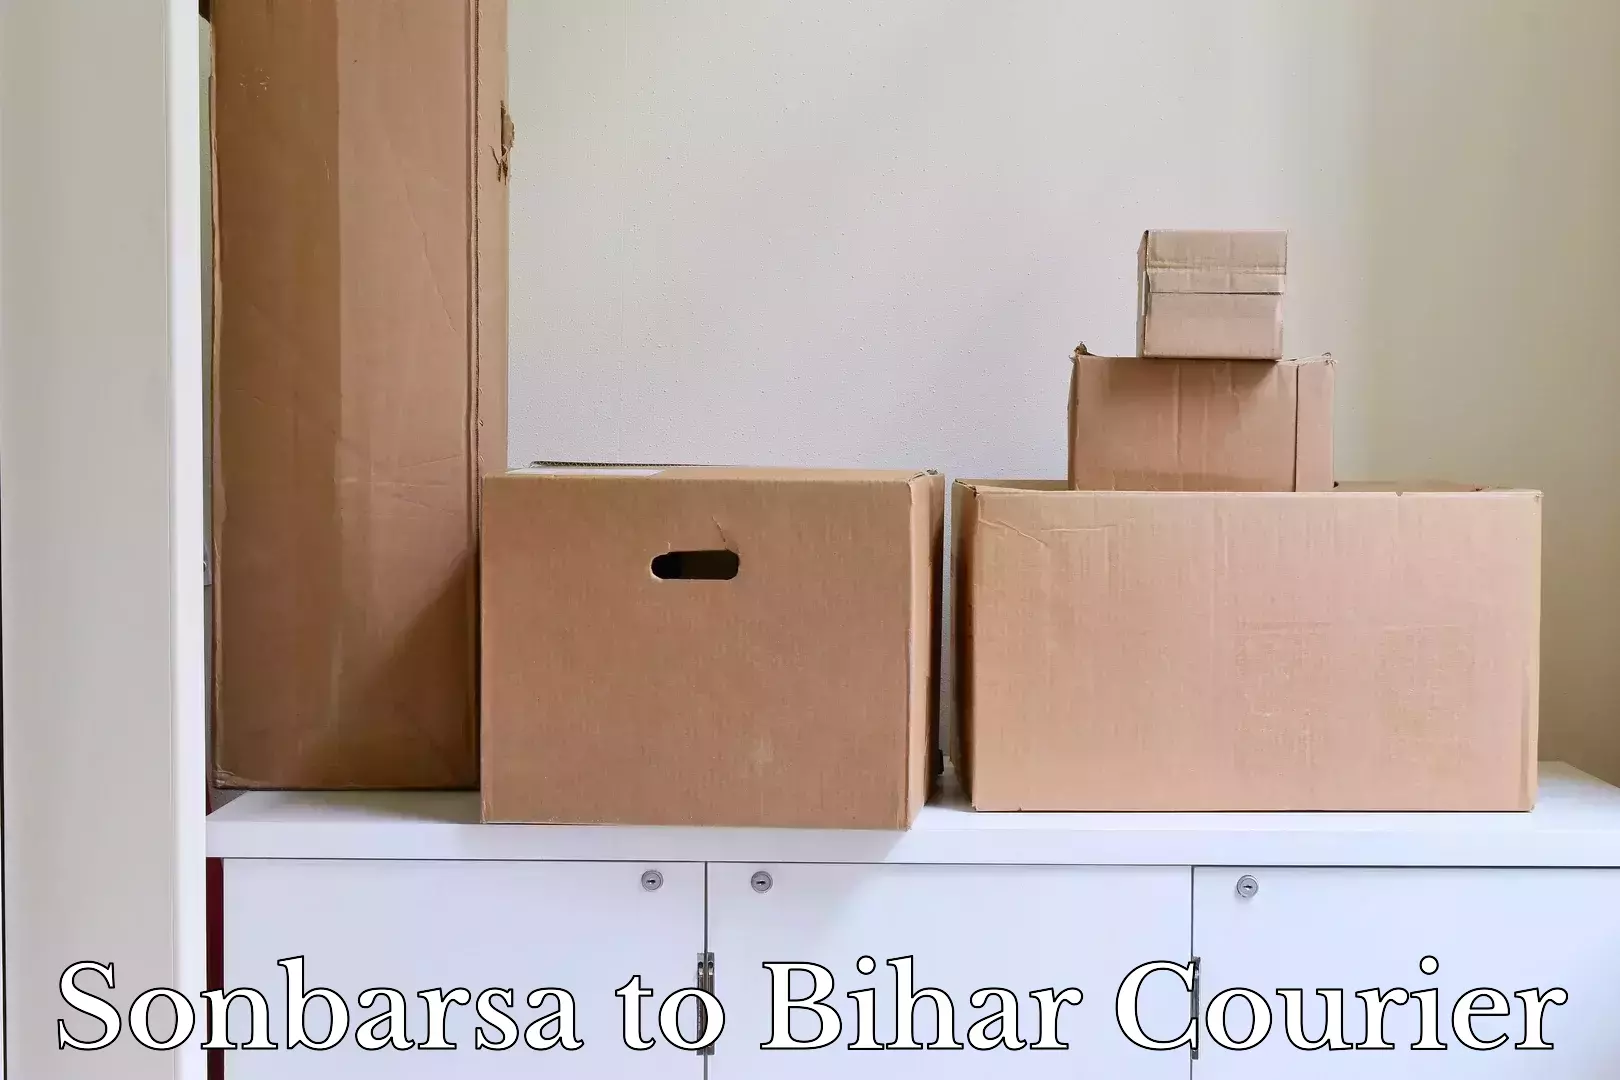 Baggage relocation service Sonbarsa to Bihar